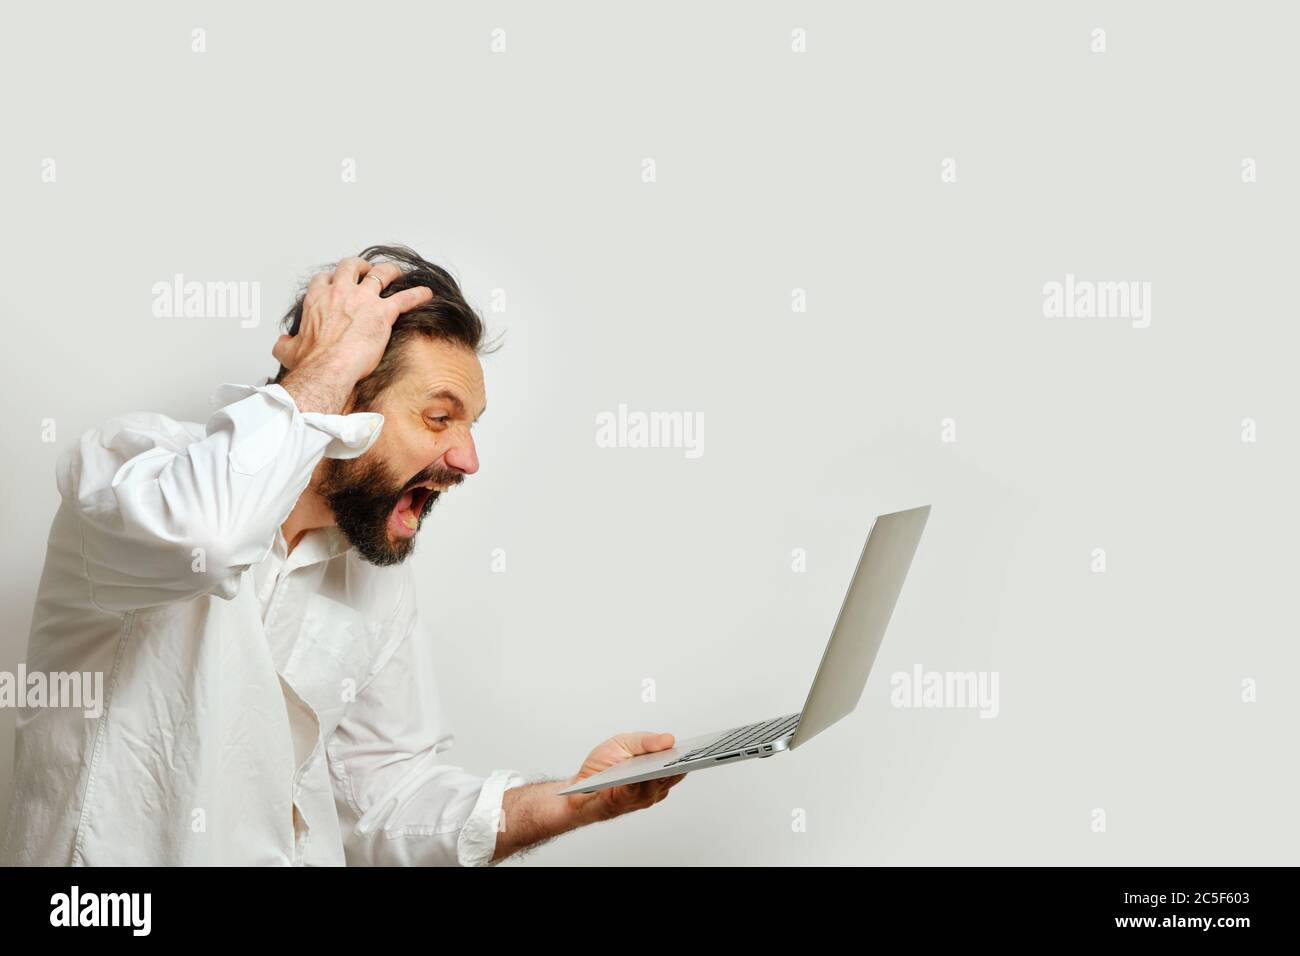 Homme qui se serre la tête et regarde dans le désespoir un moniteur d'ordinateur portable isolé sur un fond blanc. Le concept des émotions et de la crise financière. Banque D'Images